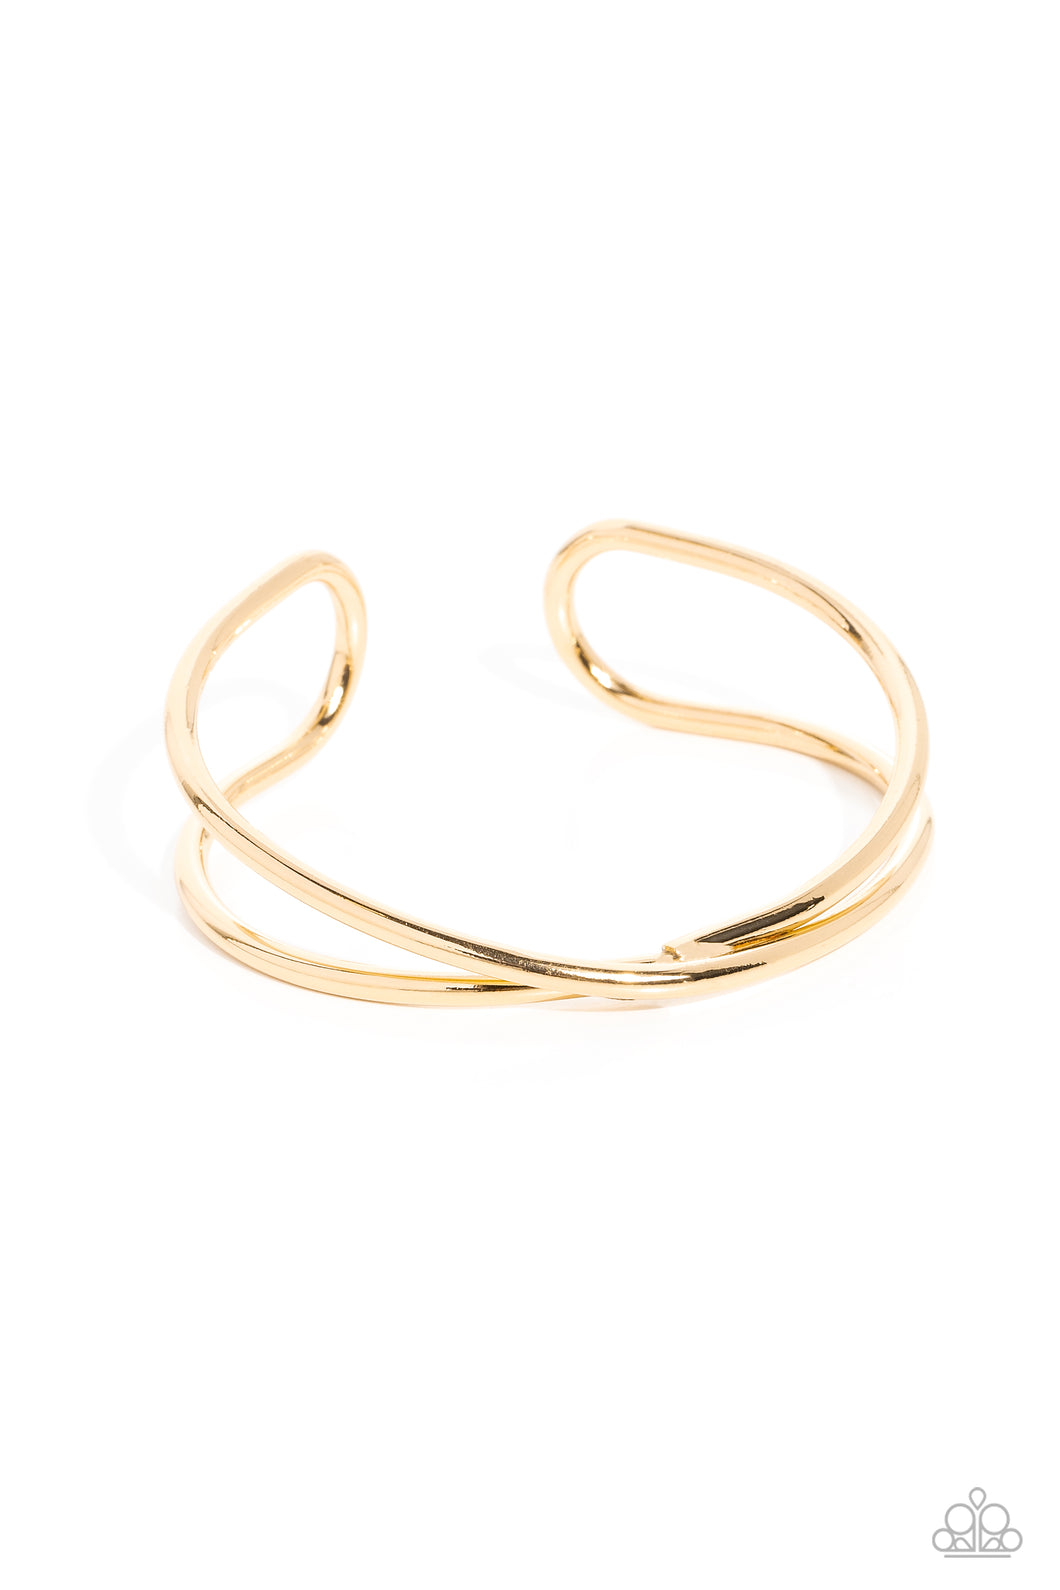 Teasing Twist - Gold Cuff Bracelet